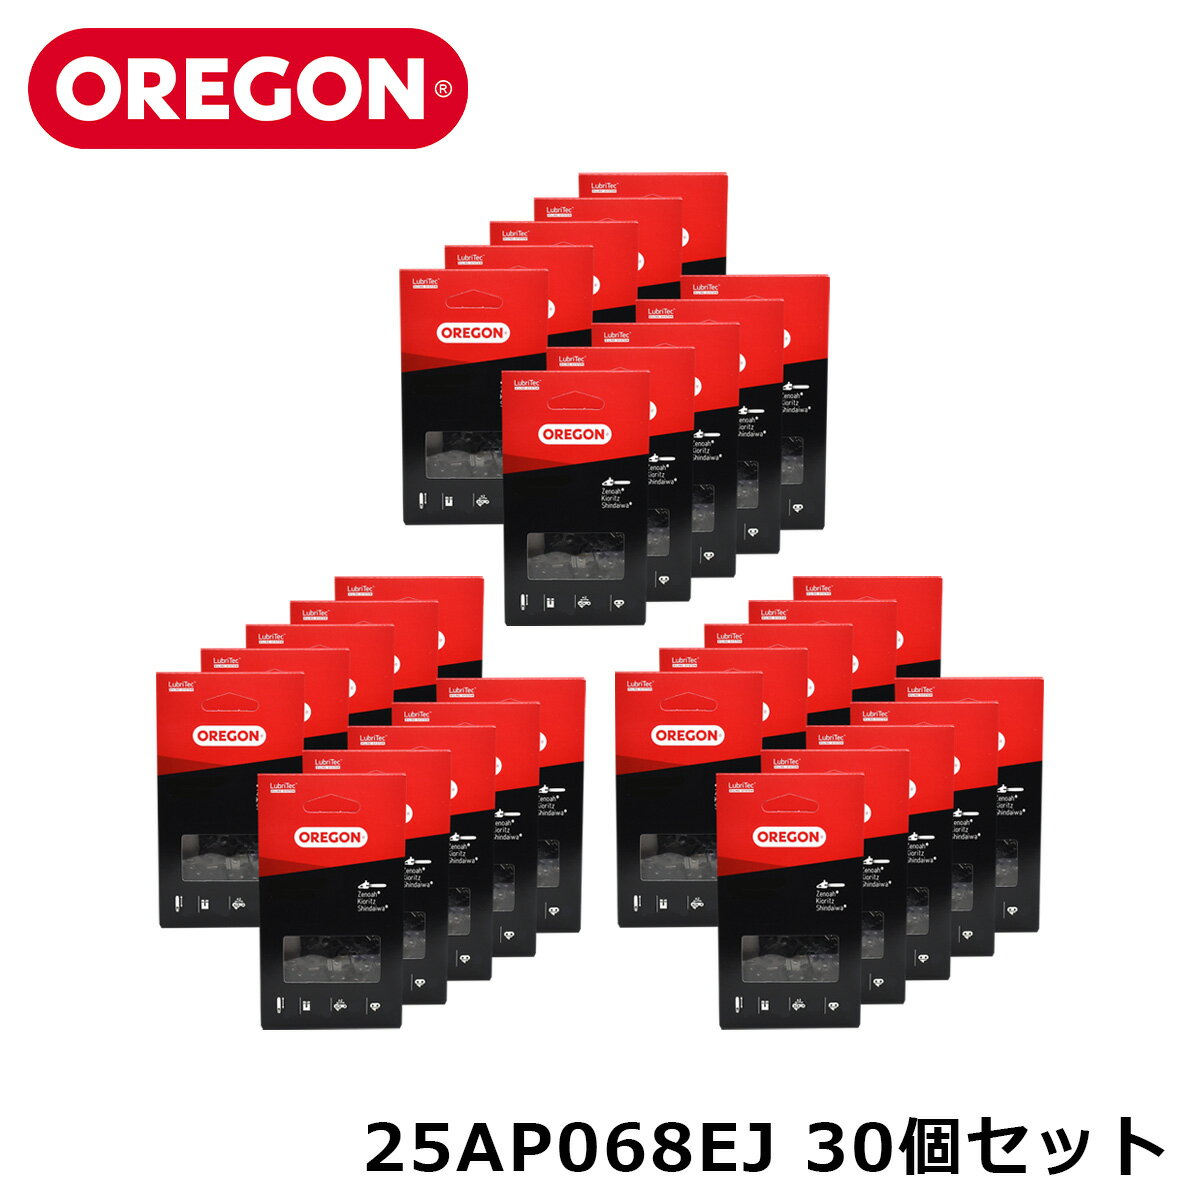 商品詳細 非常に軽く滑らかな切れ味を持ち、日本市場で長年圧倒的な支持を受けております。保守の容易さに大きな特徴があり、丸みを帯びたチェーン構造によって優れた耐久性も兼ね備えております。 メーカー OREGON[オレゴン] チェーンタイプ コントロールカット コマ数 68E ピッチ 1/4" ゲージ .050" バーの長さ 12インチ 備考 同じチェンソー機種でも異なったチェーンタイプの仕様もありますのでご注意ください。